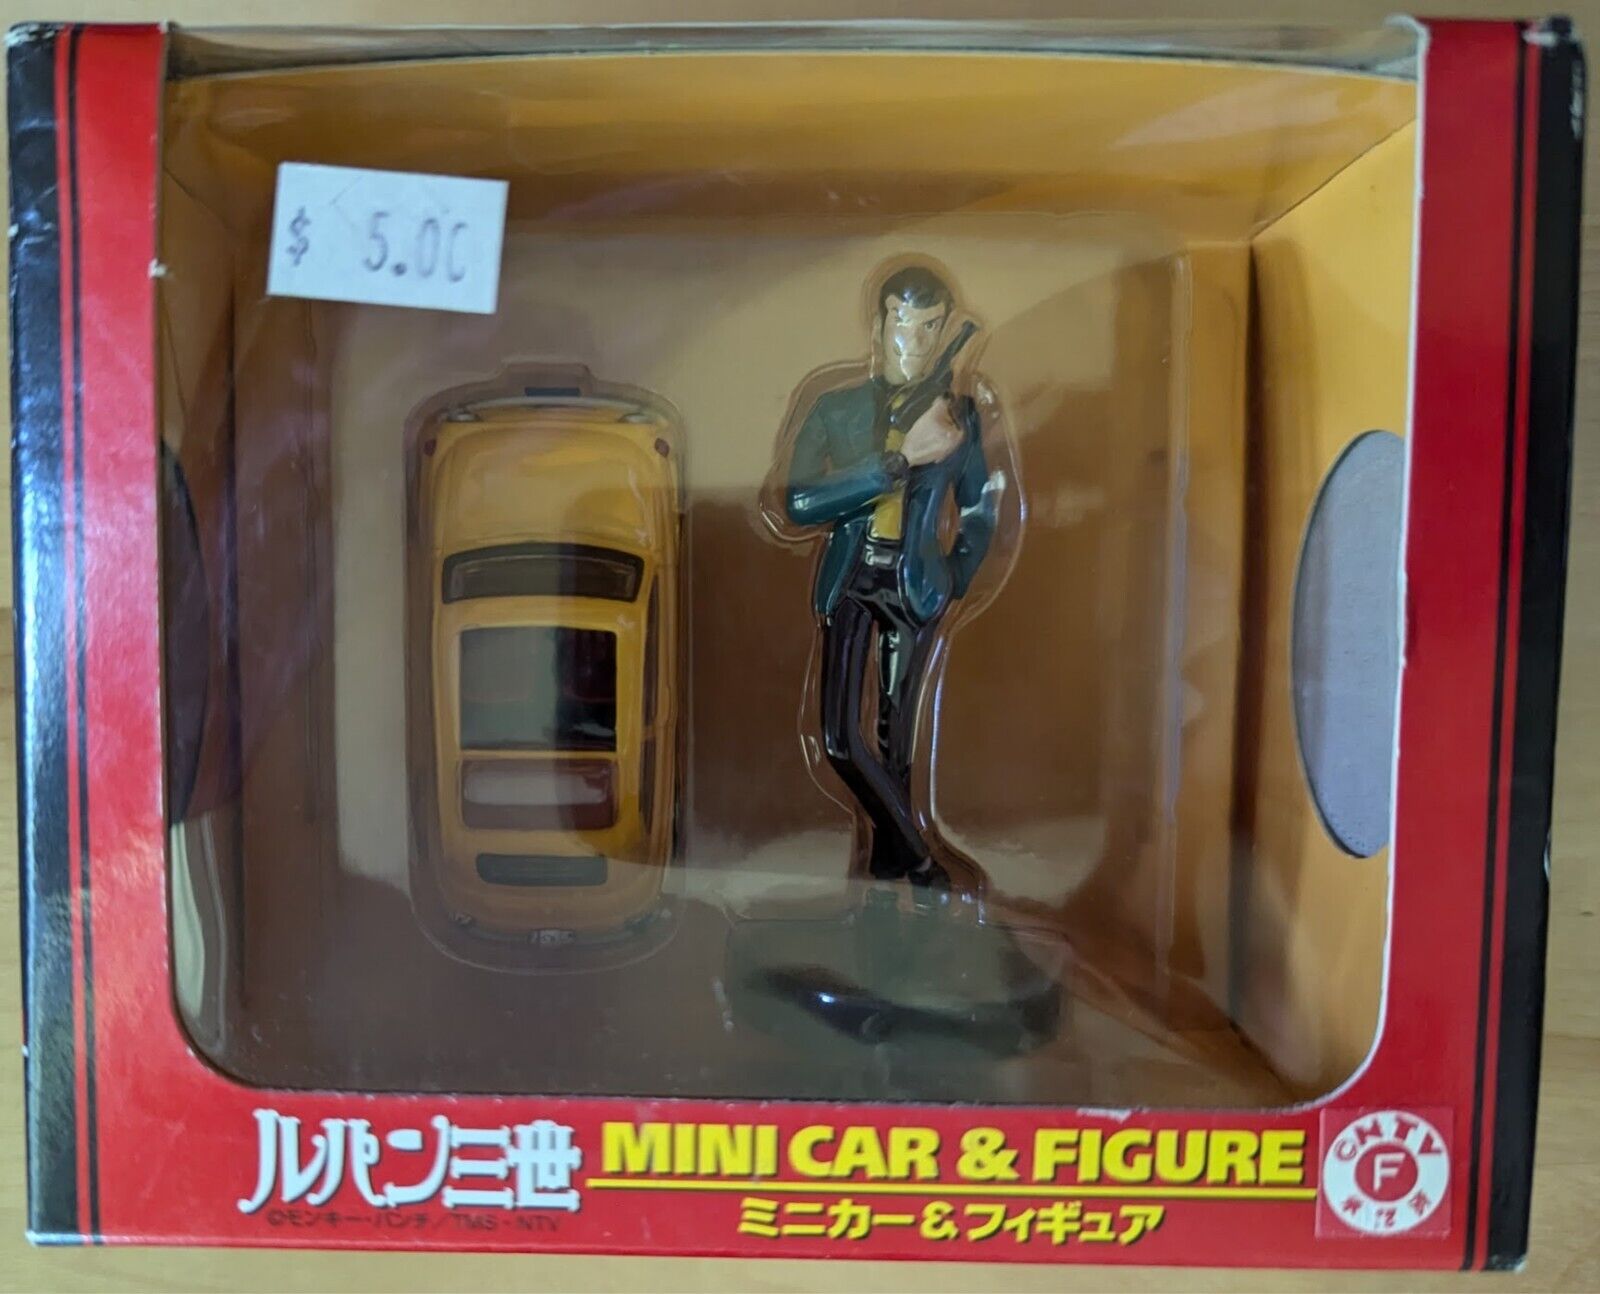 Lupin III Lupin the Third Mini car & Figure